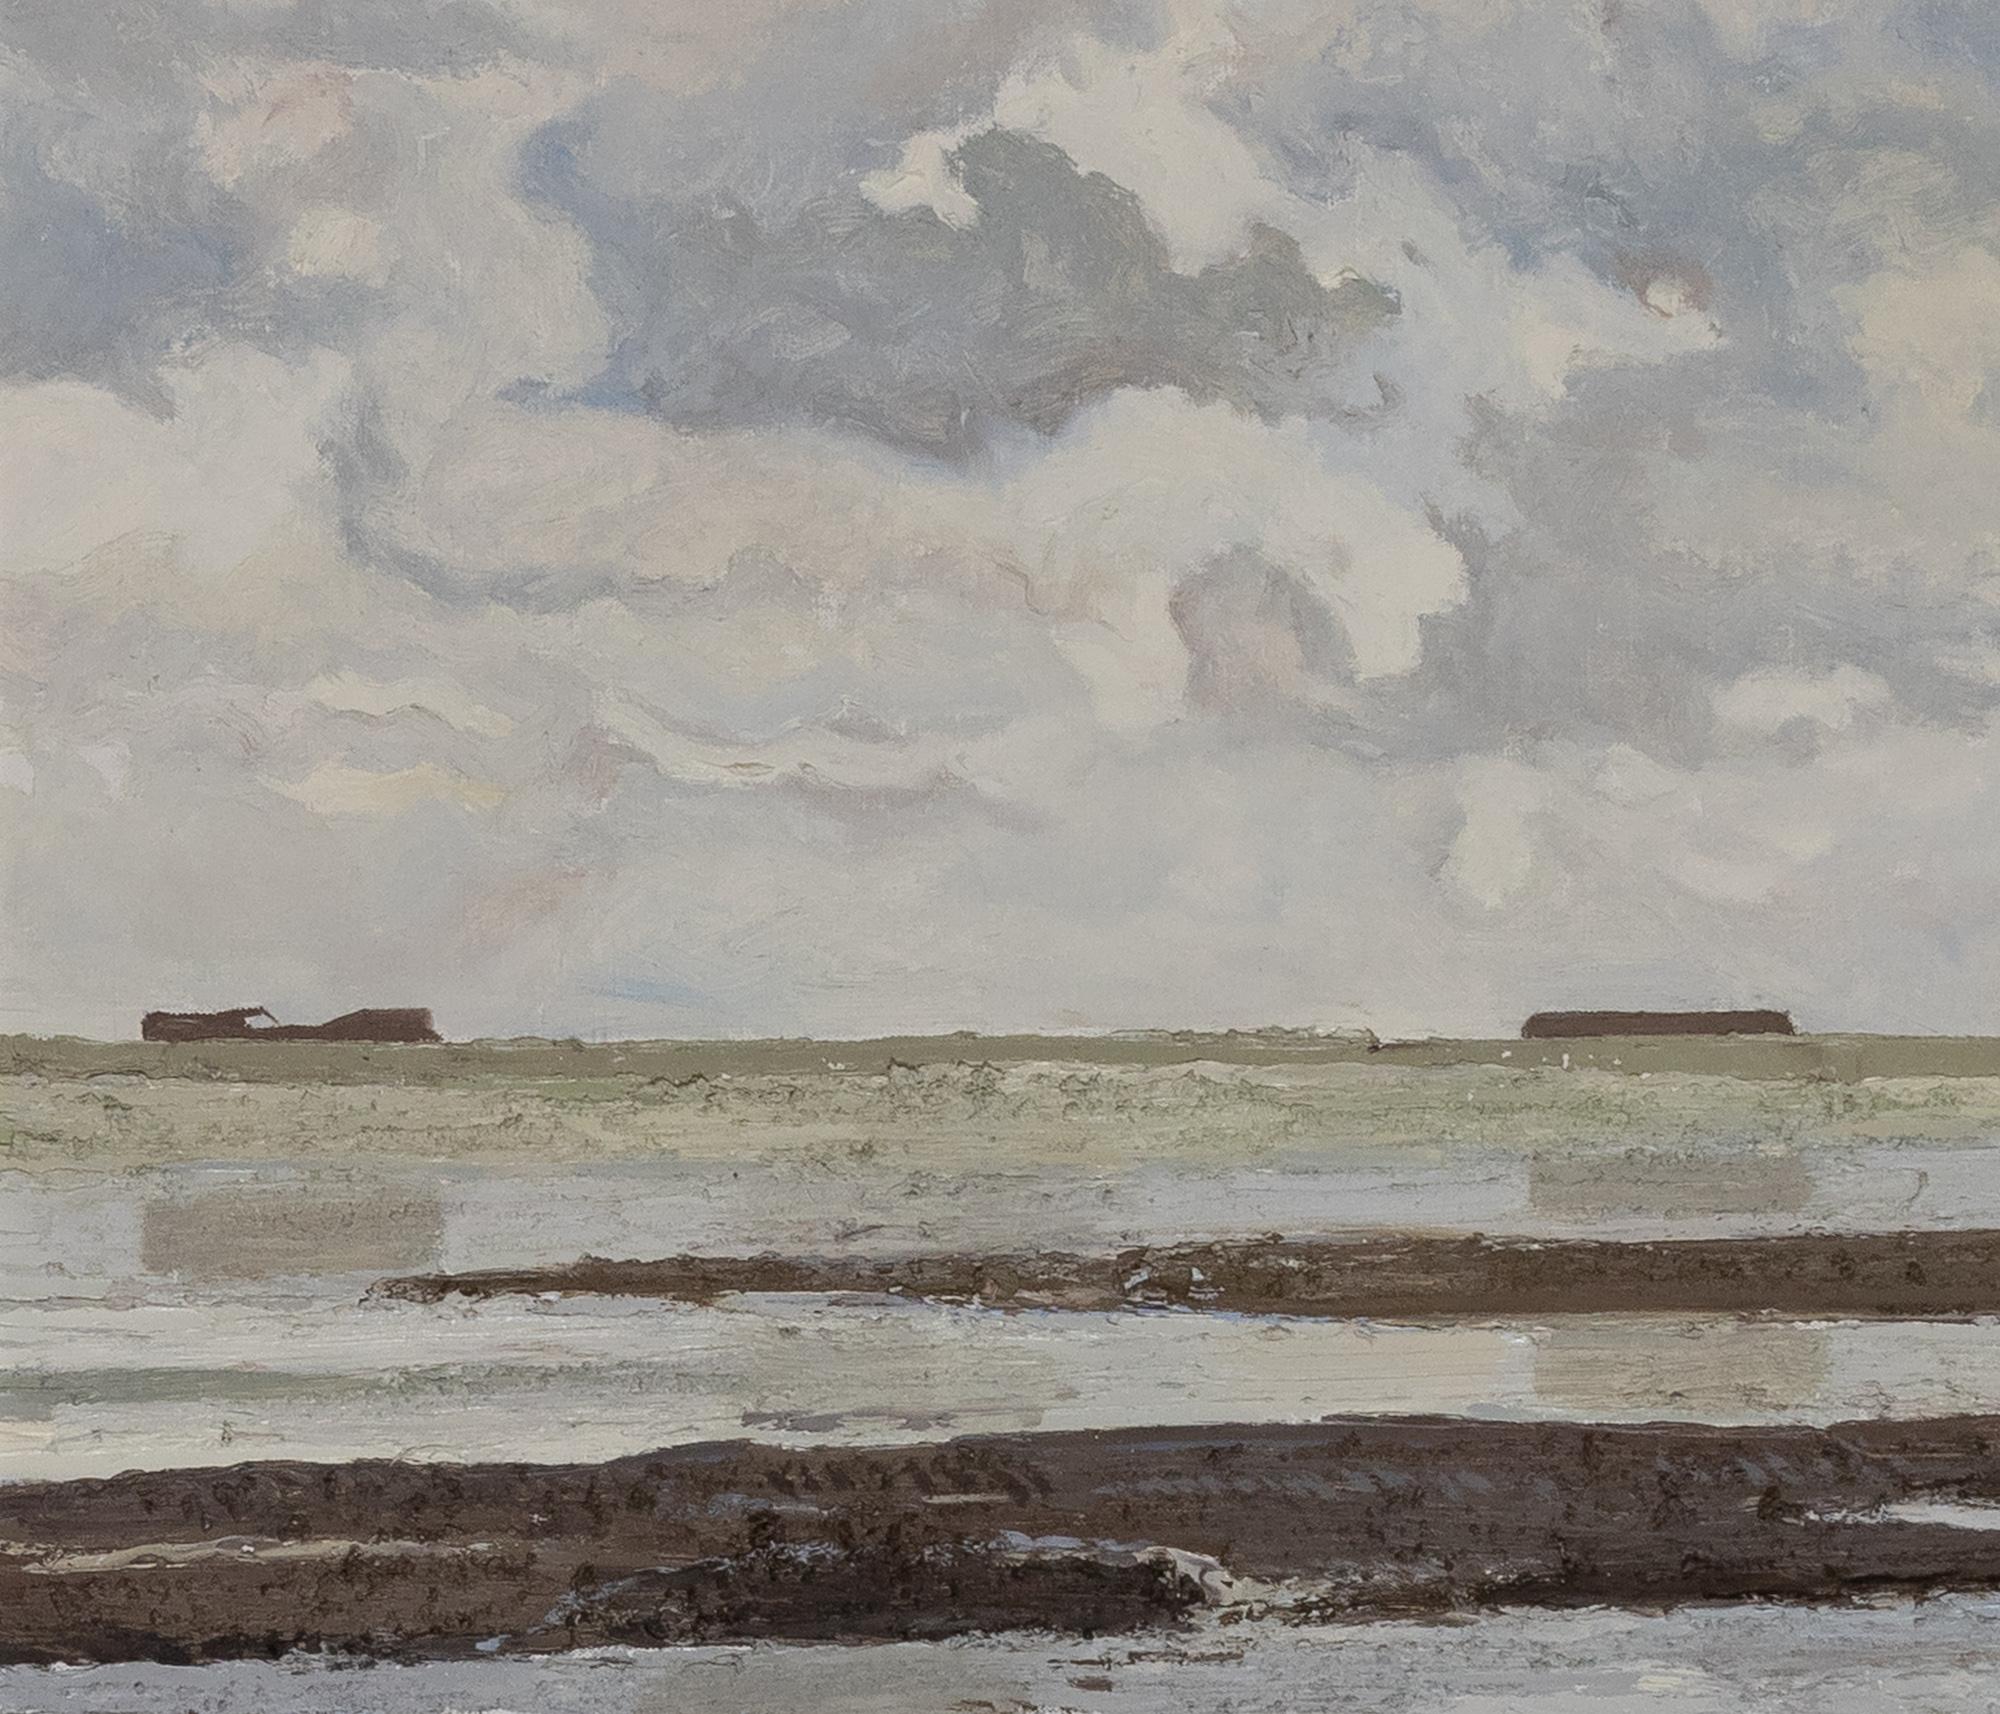 Petite Marine Grise by Hugues Pissarro dit Pomié - Oil painting, Landscape - Contemporary Painting by Hughes Claude Pissarro